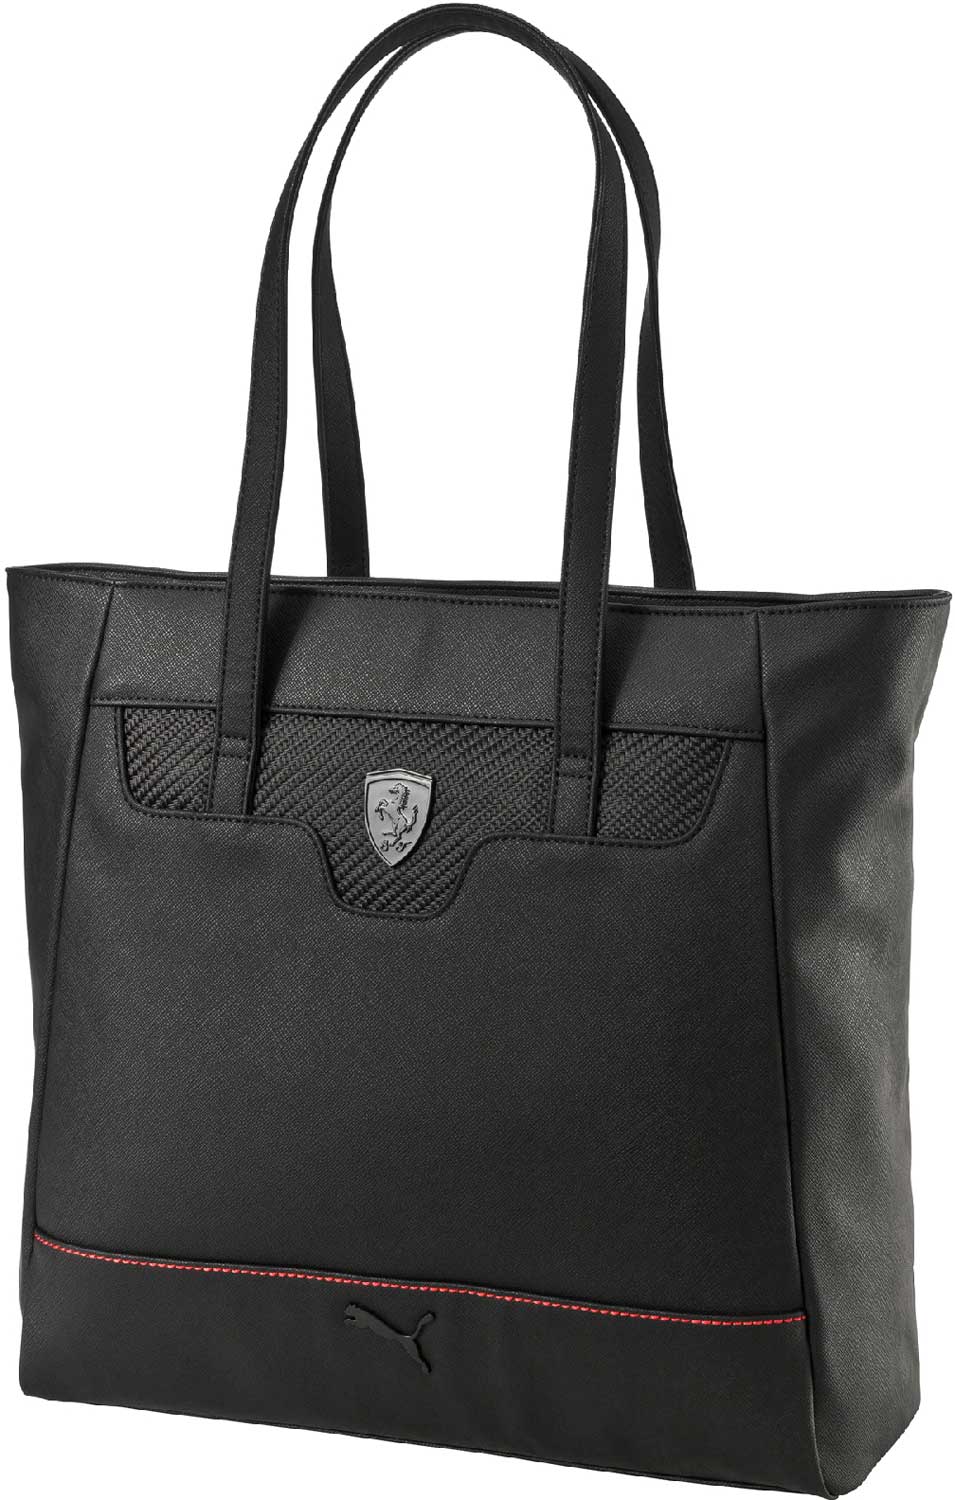 Luxurious women’s handbag